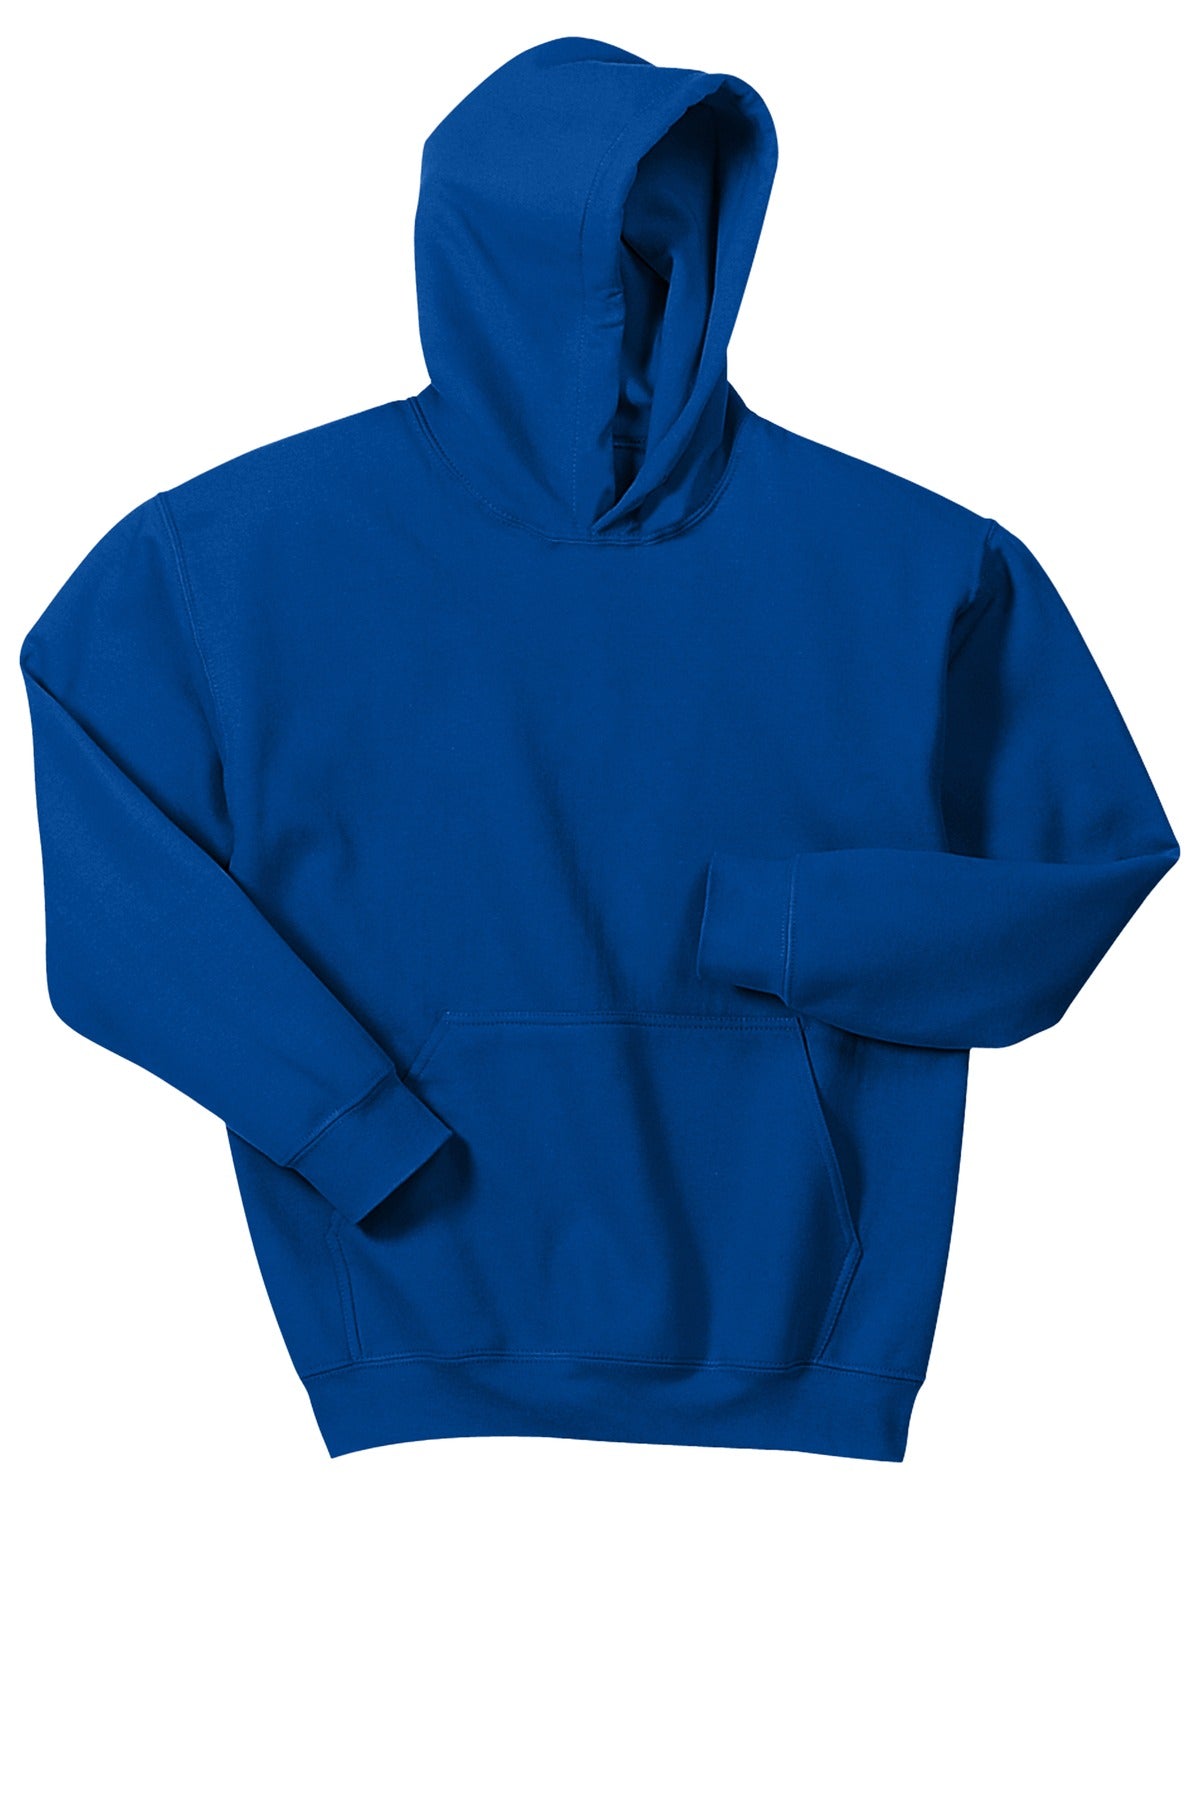 Gildan® - Youth Heavy Blend™ Hooded Sweatshirt. 18500B [Royal] - DFW Impression